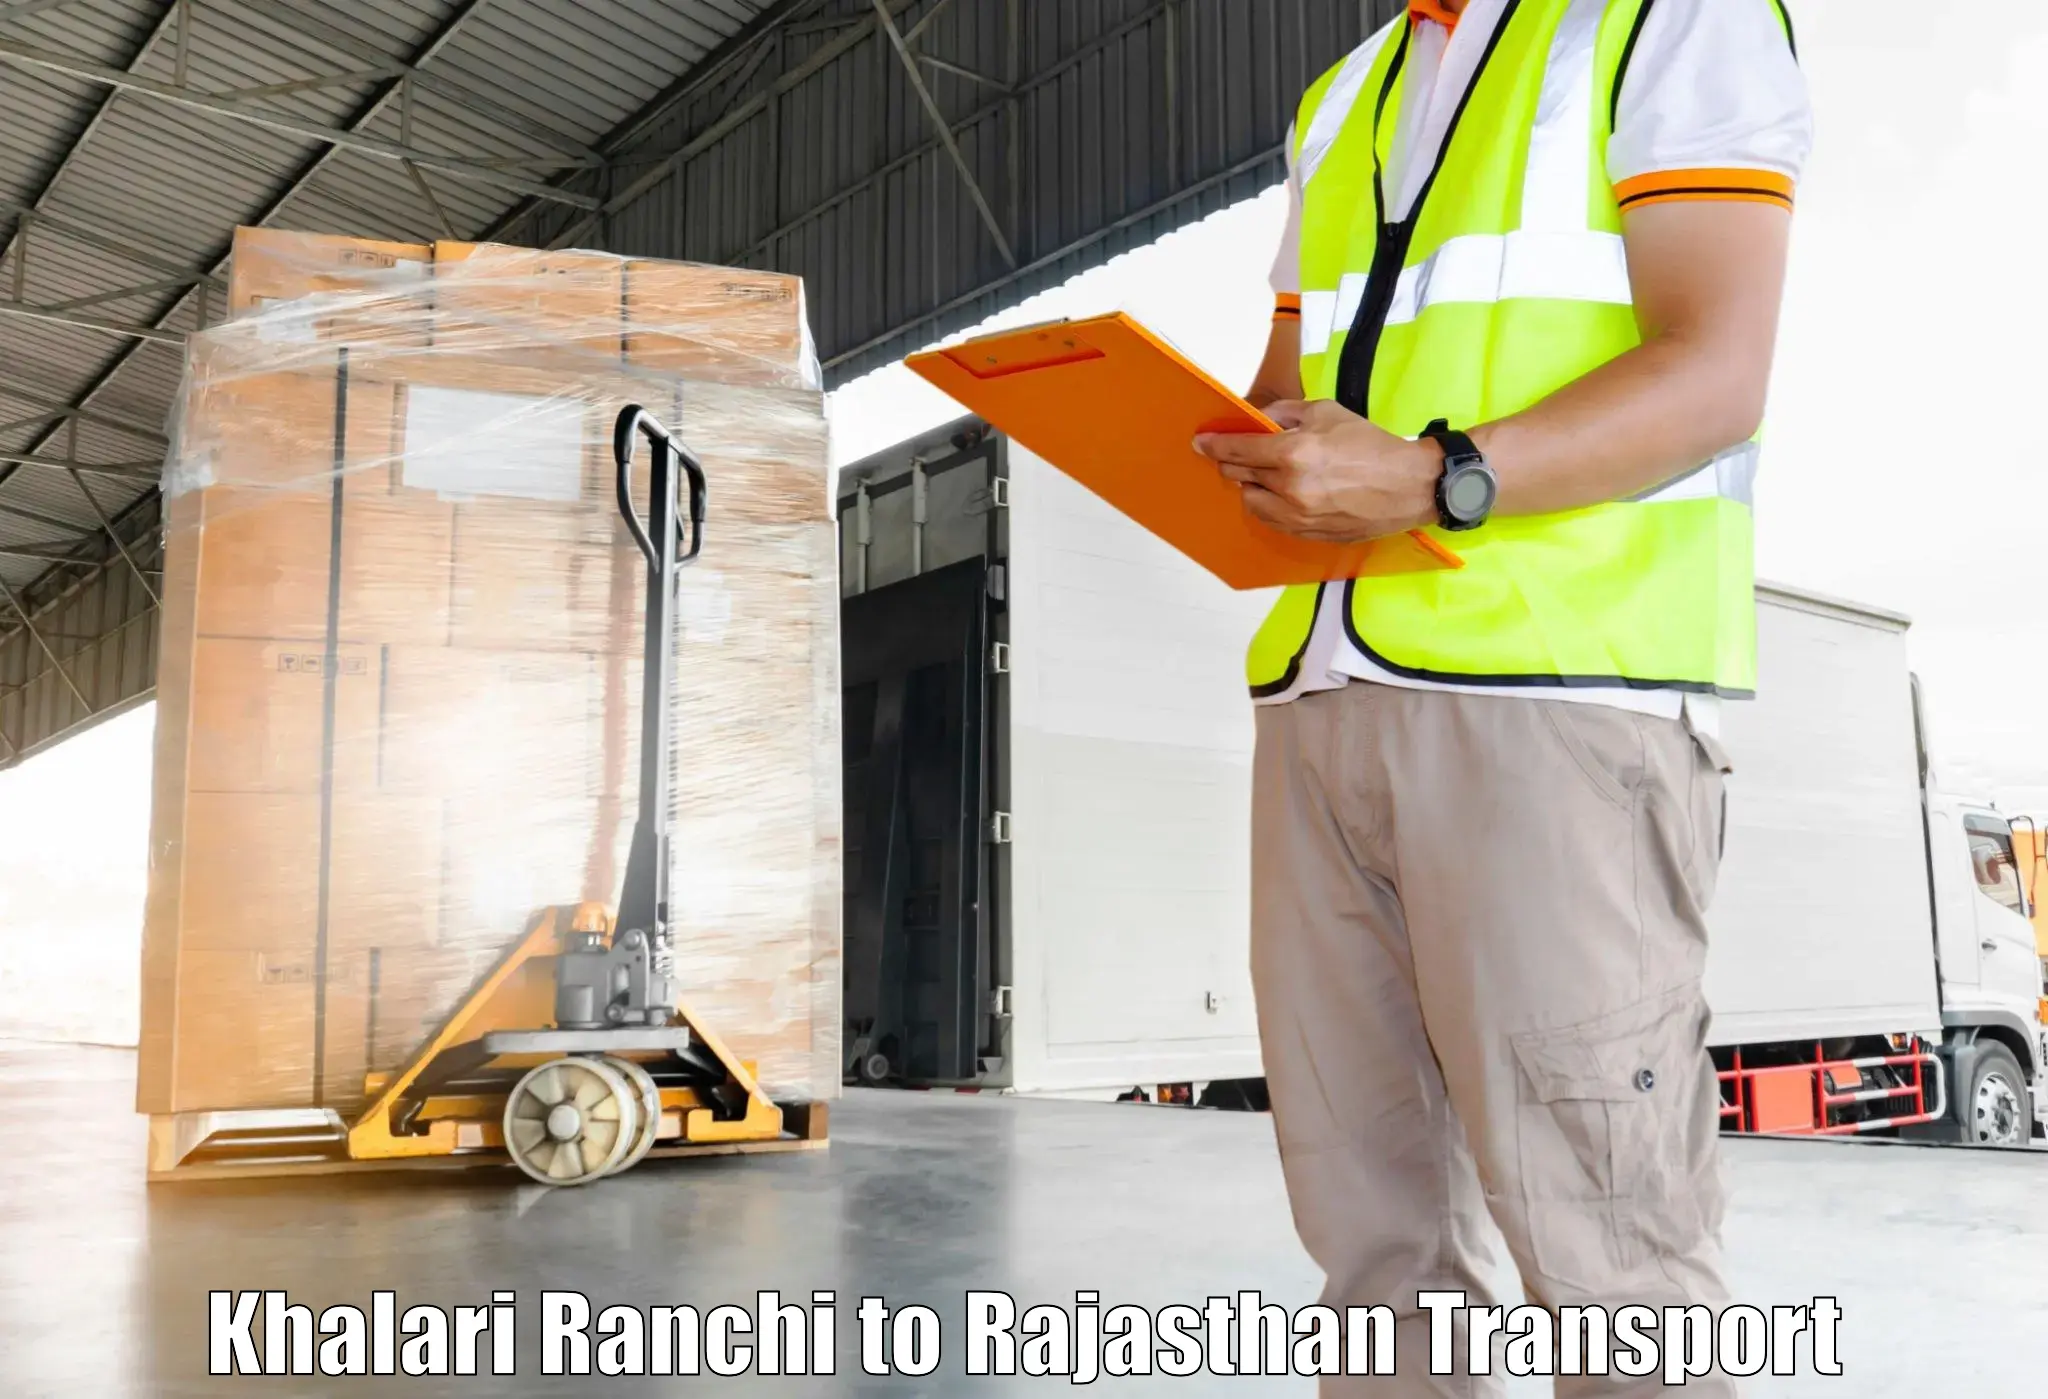 Goods delivery service Khalari Ranchi to Nainwa